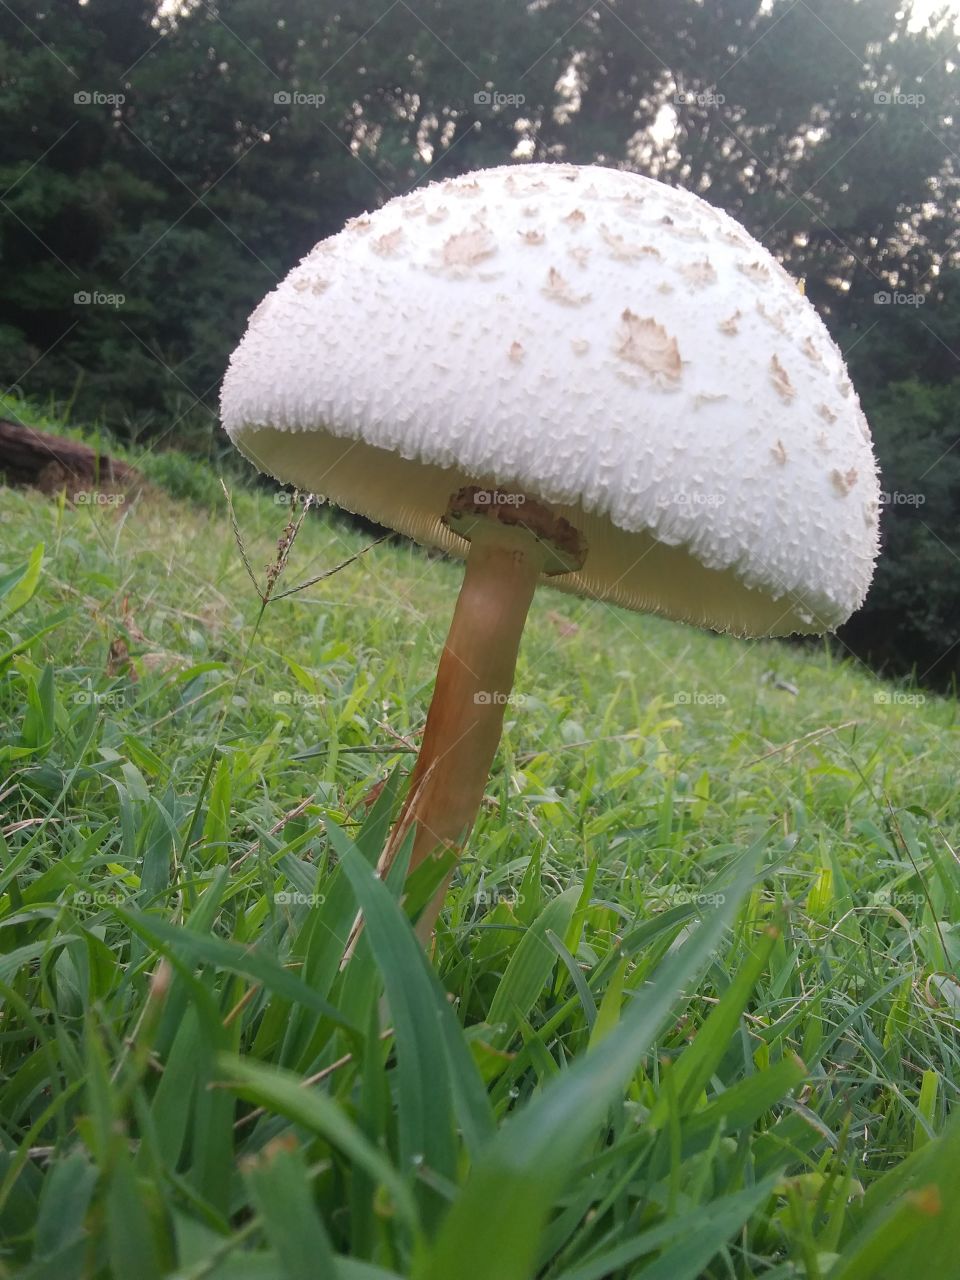 mushroom surprised me